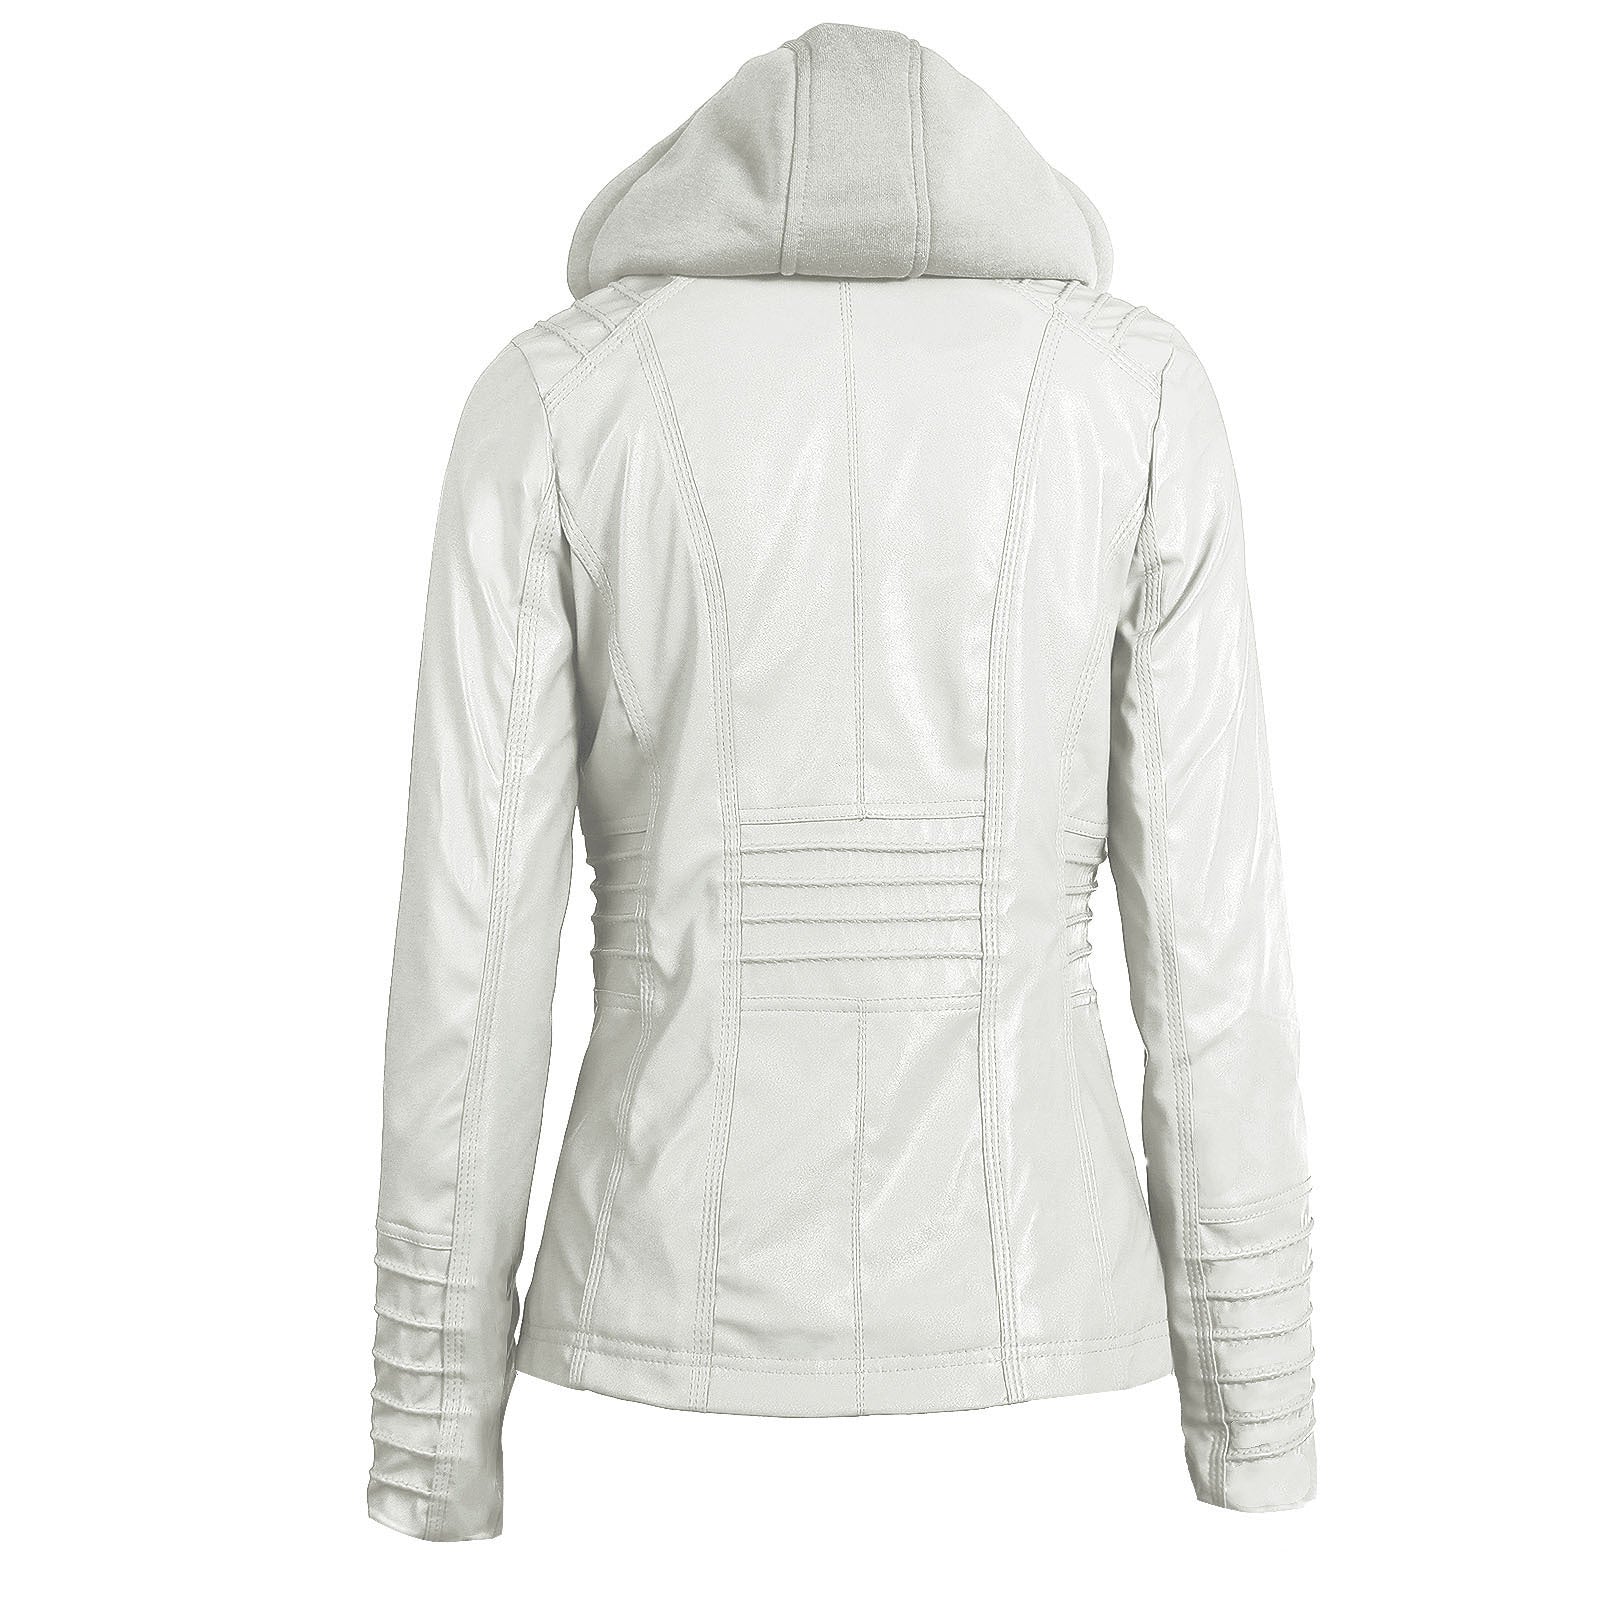 Long-sleeved Zipper Leather Jacket / Women Hooded Pockets PU Jacket - HARD'N'HEAVY